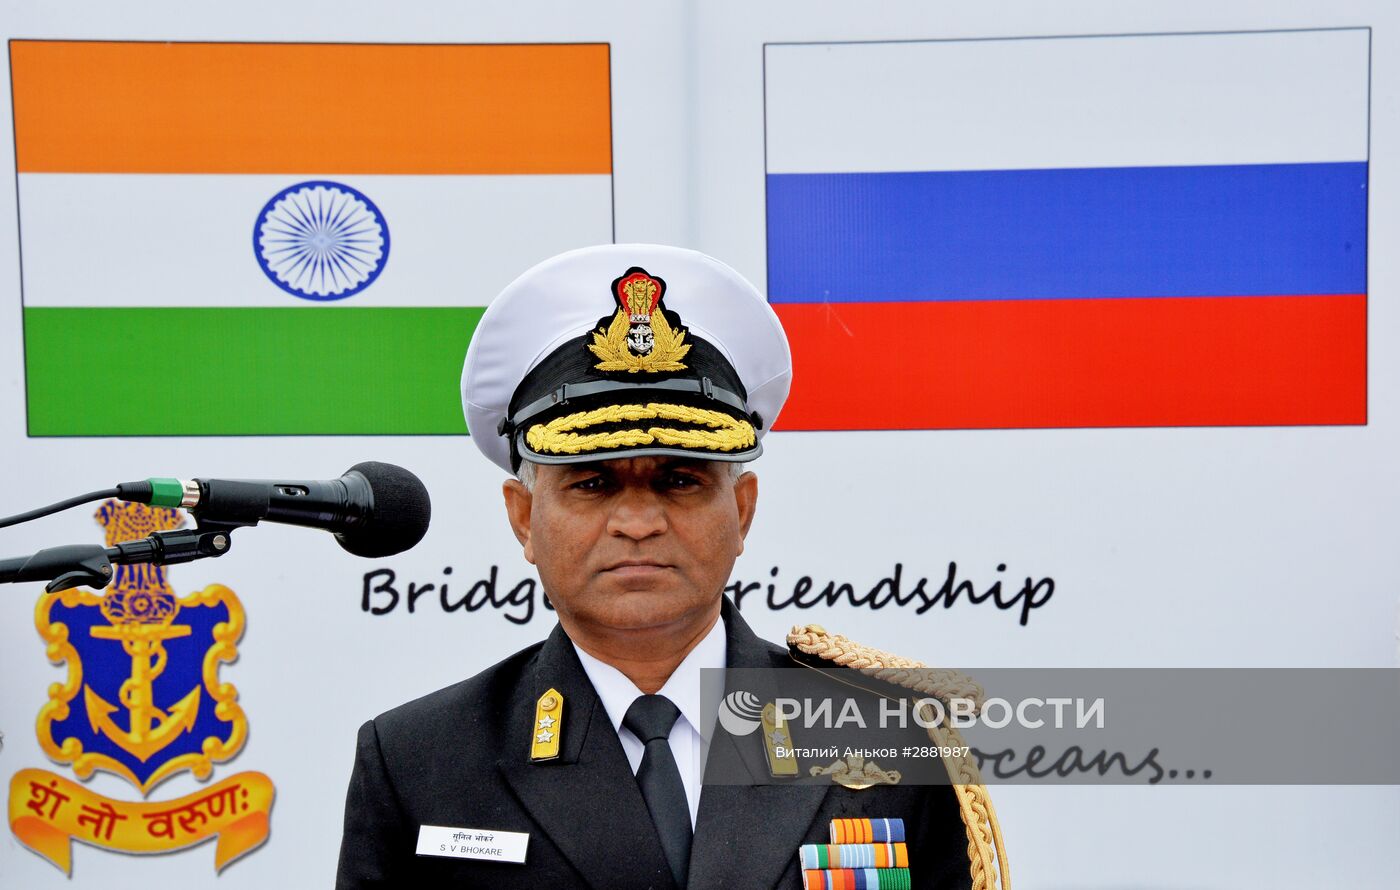 Встреча отряда кораблей ВМС Республики Индии во Владивостоке